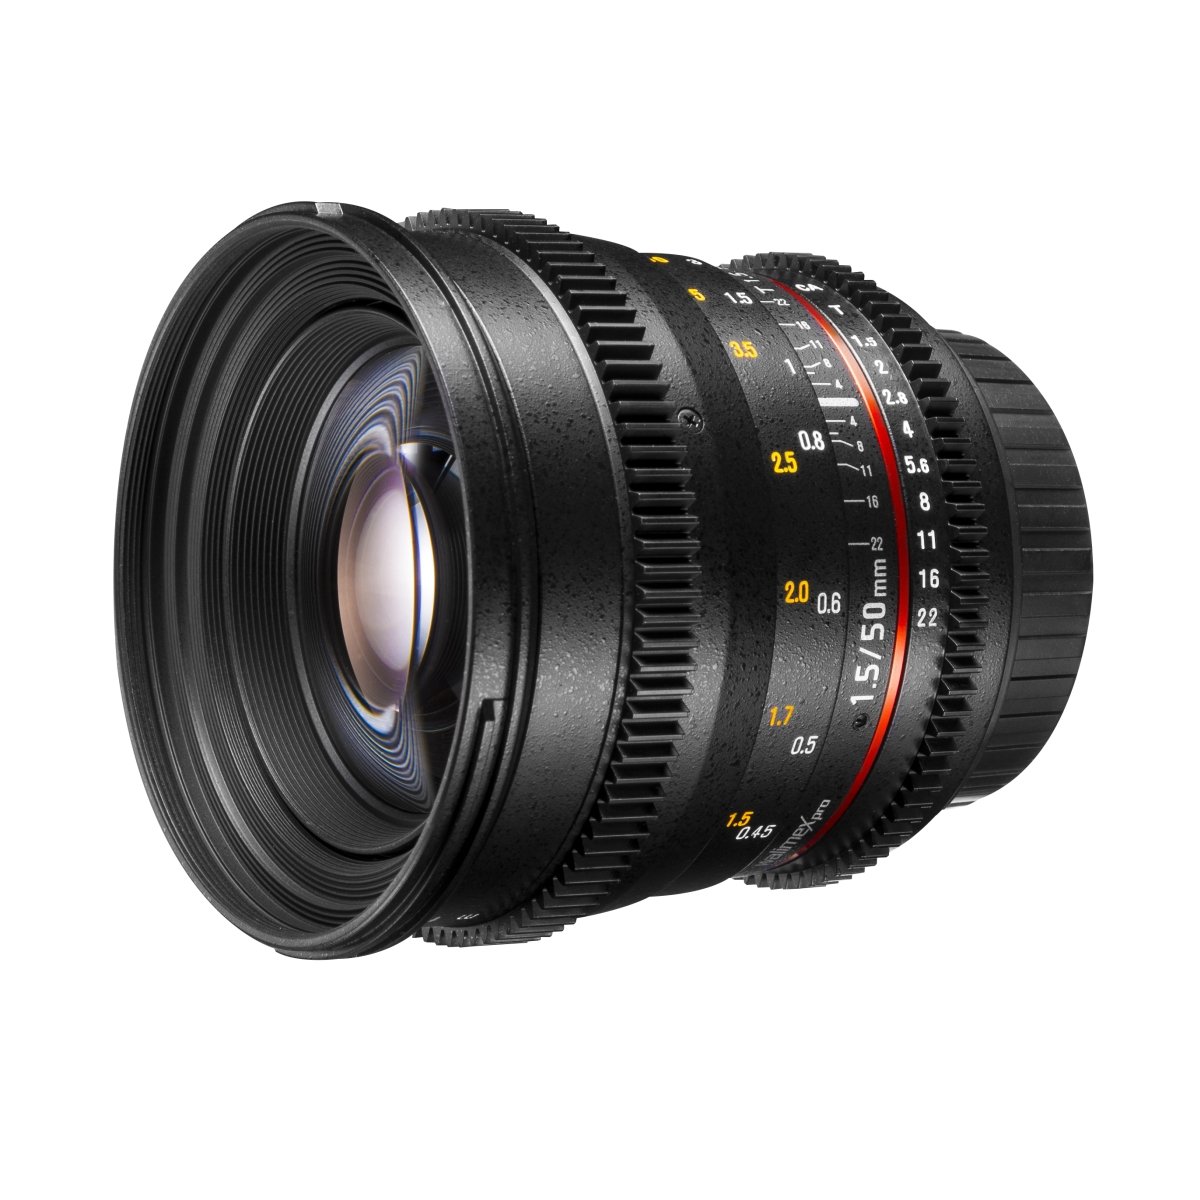 Walimex Pro 50 mm 1:1,5 VDSLR Video/Foto Objektiv für Nikon F Objektivbajonett schwarz (manueller Fokus, für Vollformat Sensor gerechnet, Filterdurchmesser 77 mm, stufenlose Blendeneinstellung)